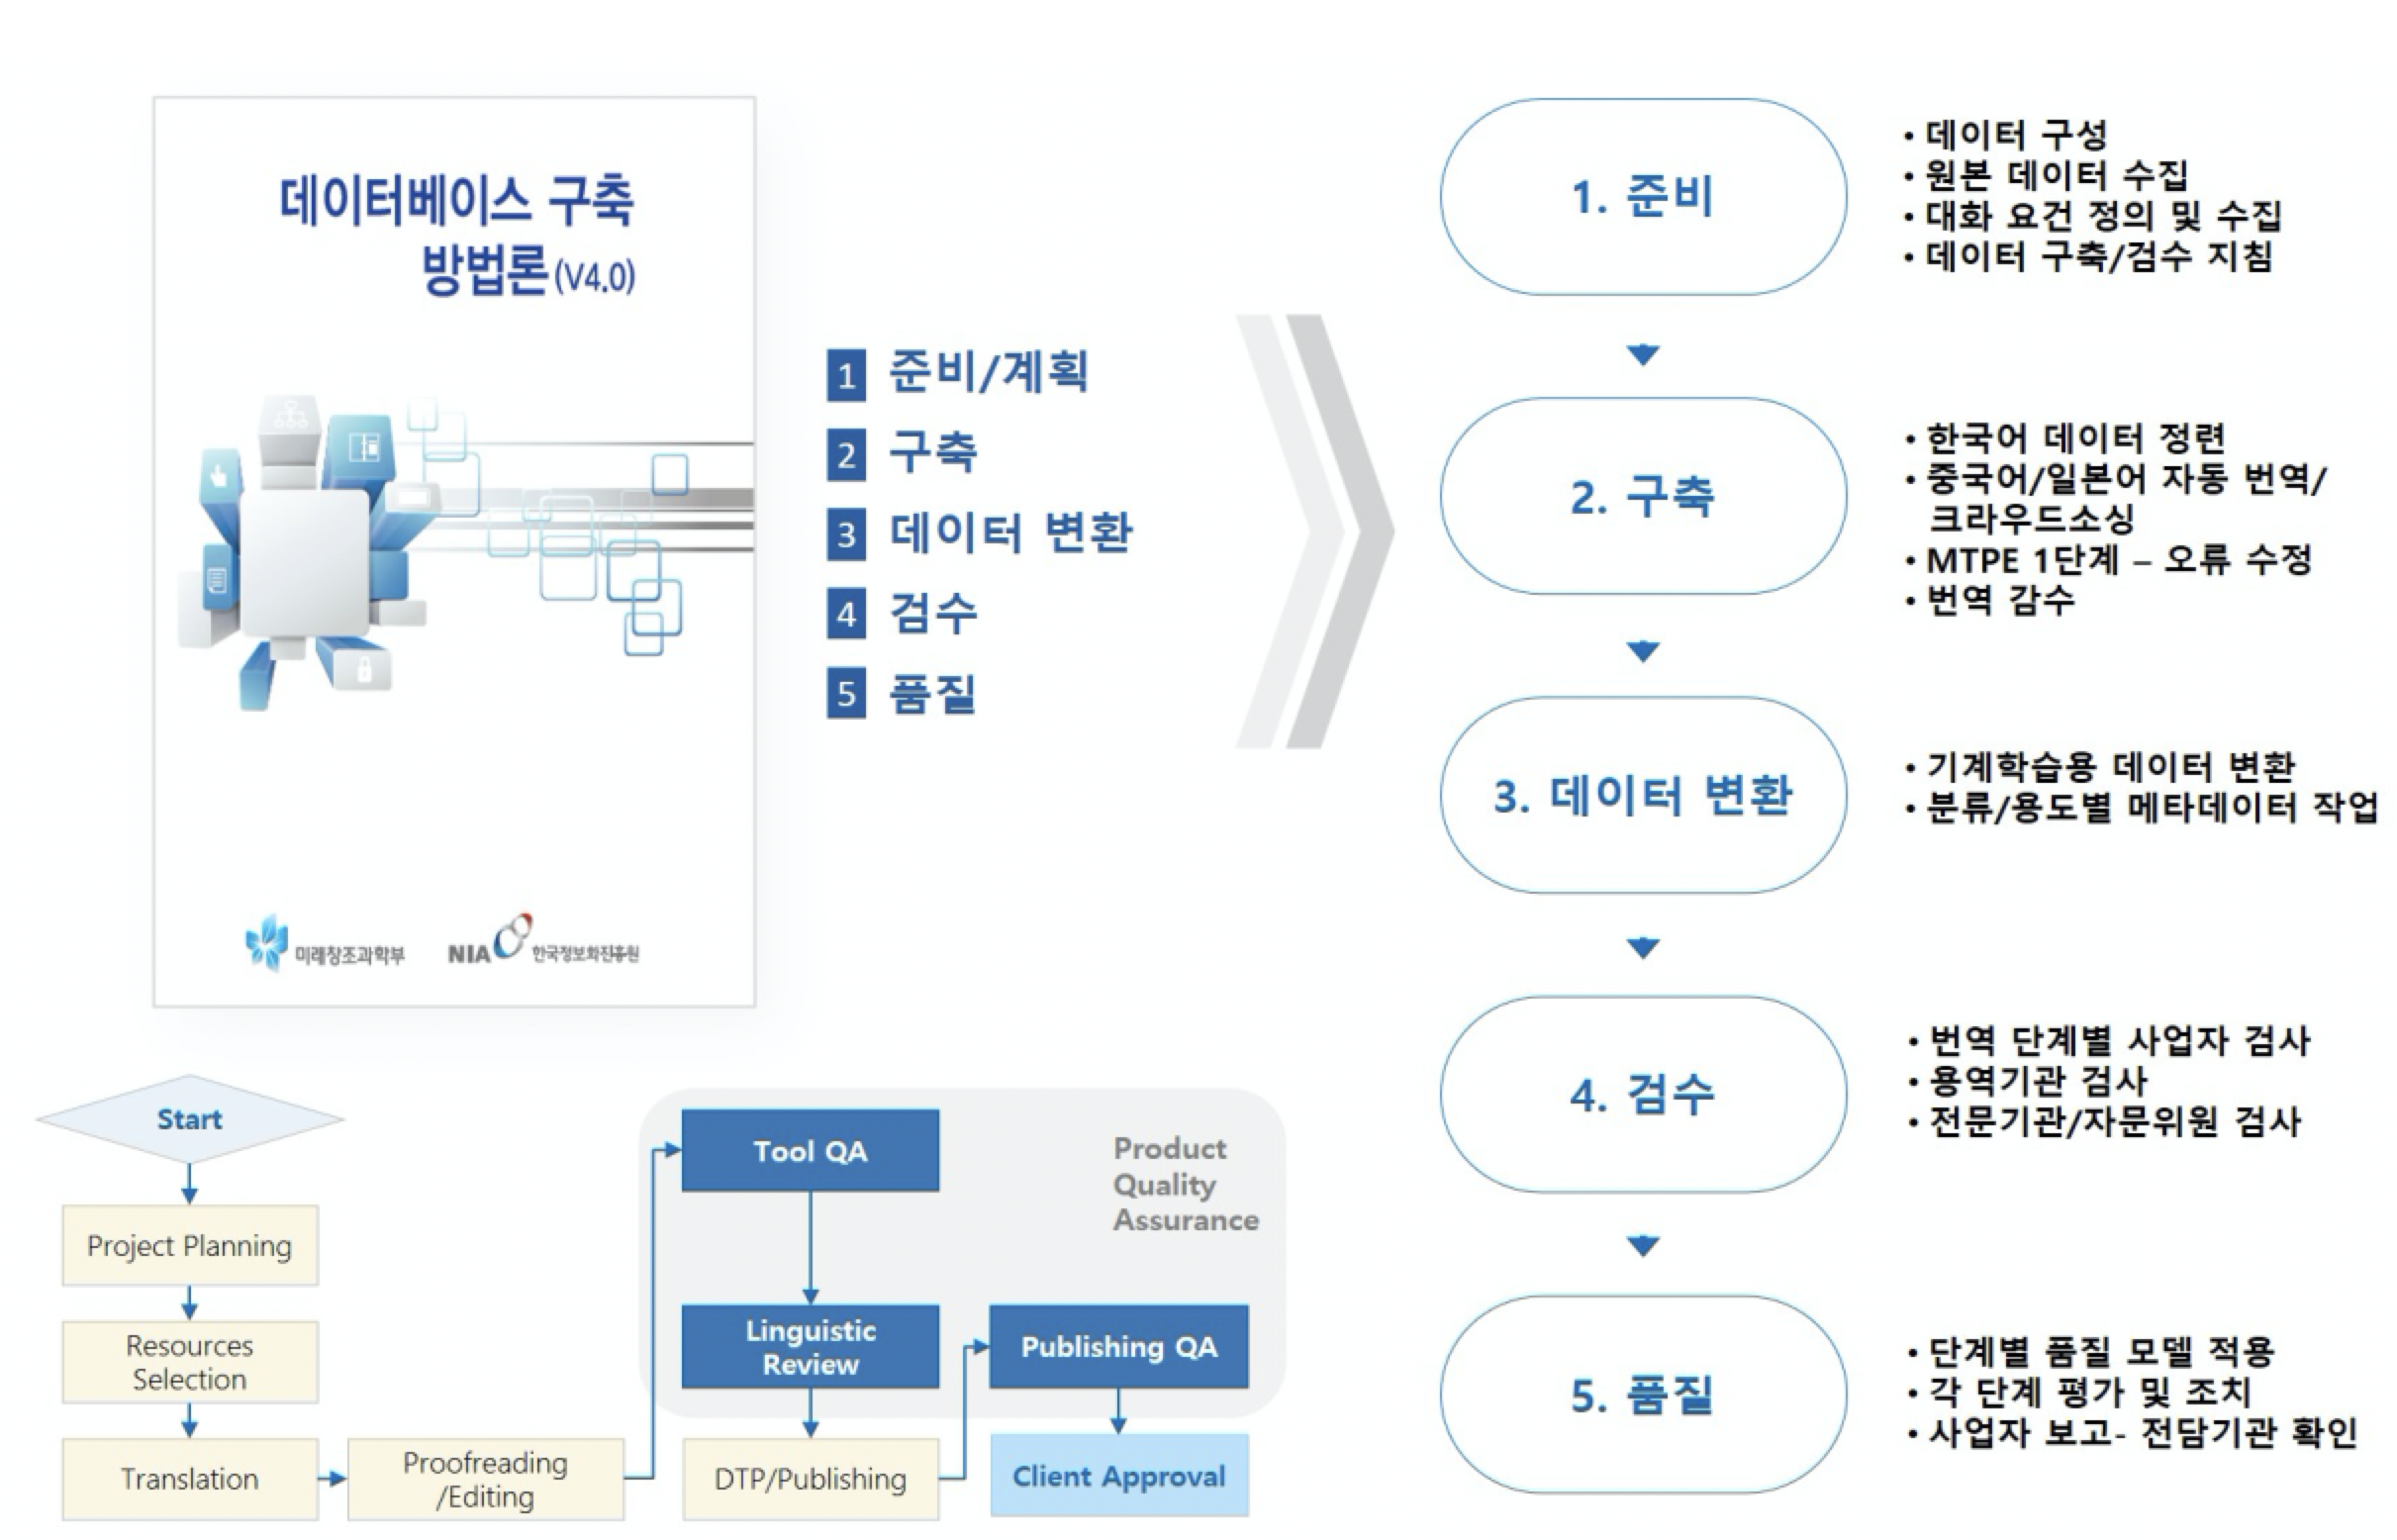 한국어-중국어 번역 말뭉치(사회과학)- 소개 프로세스 예시 이미지